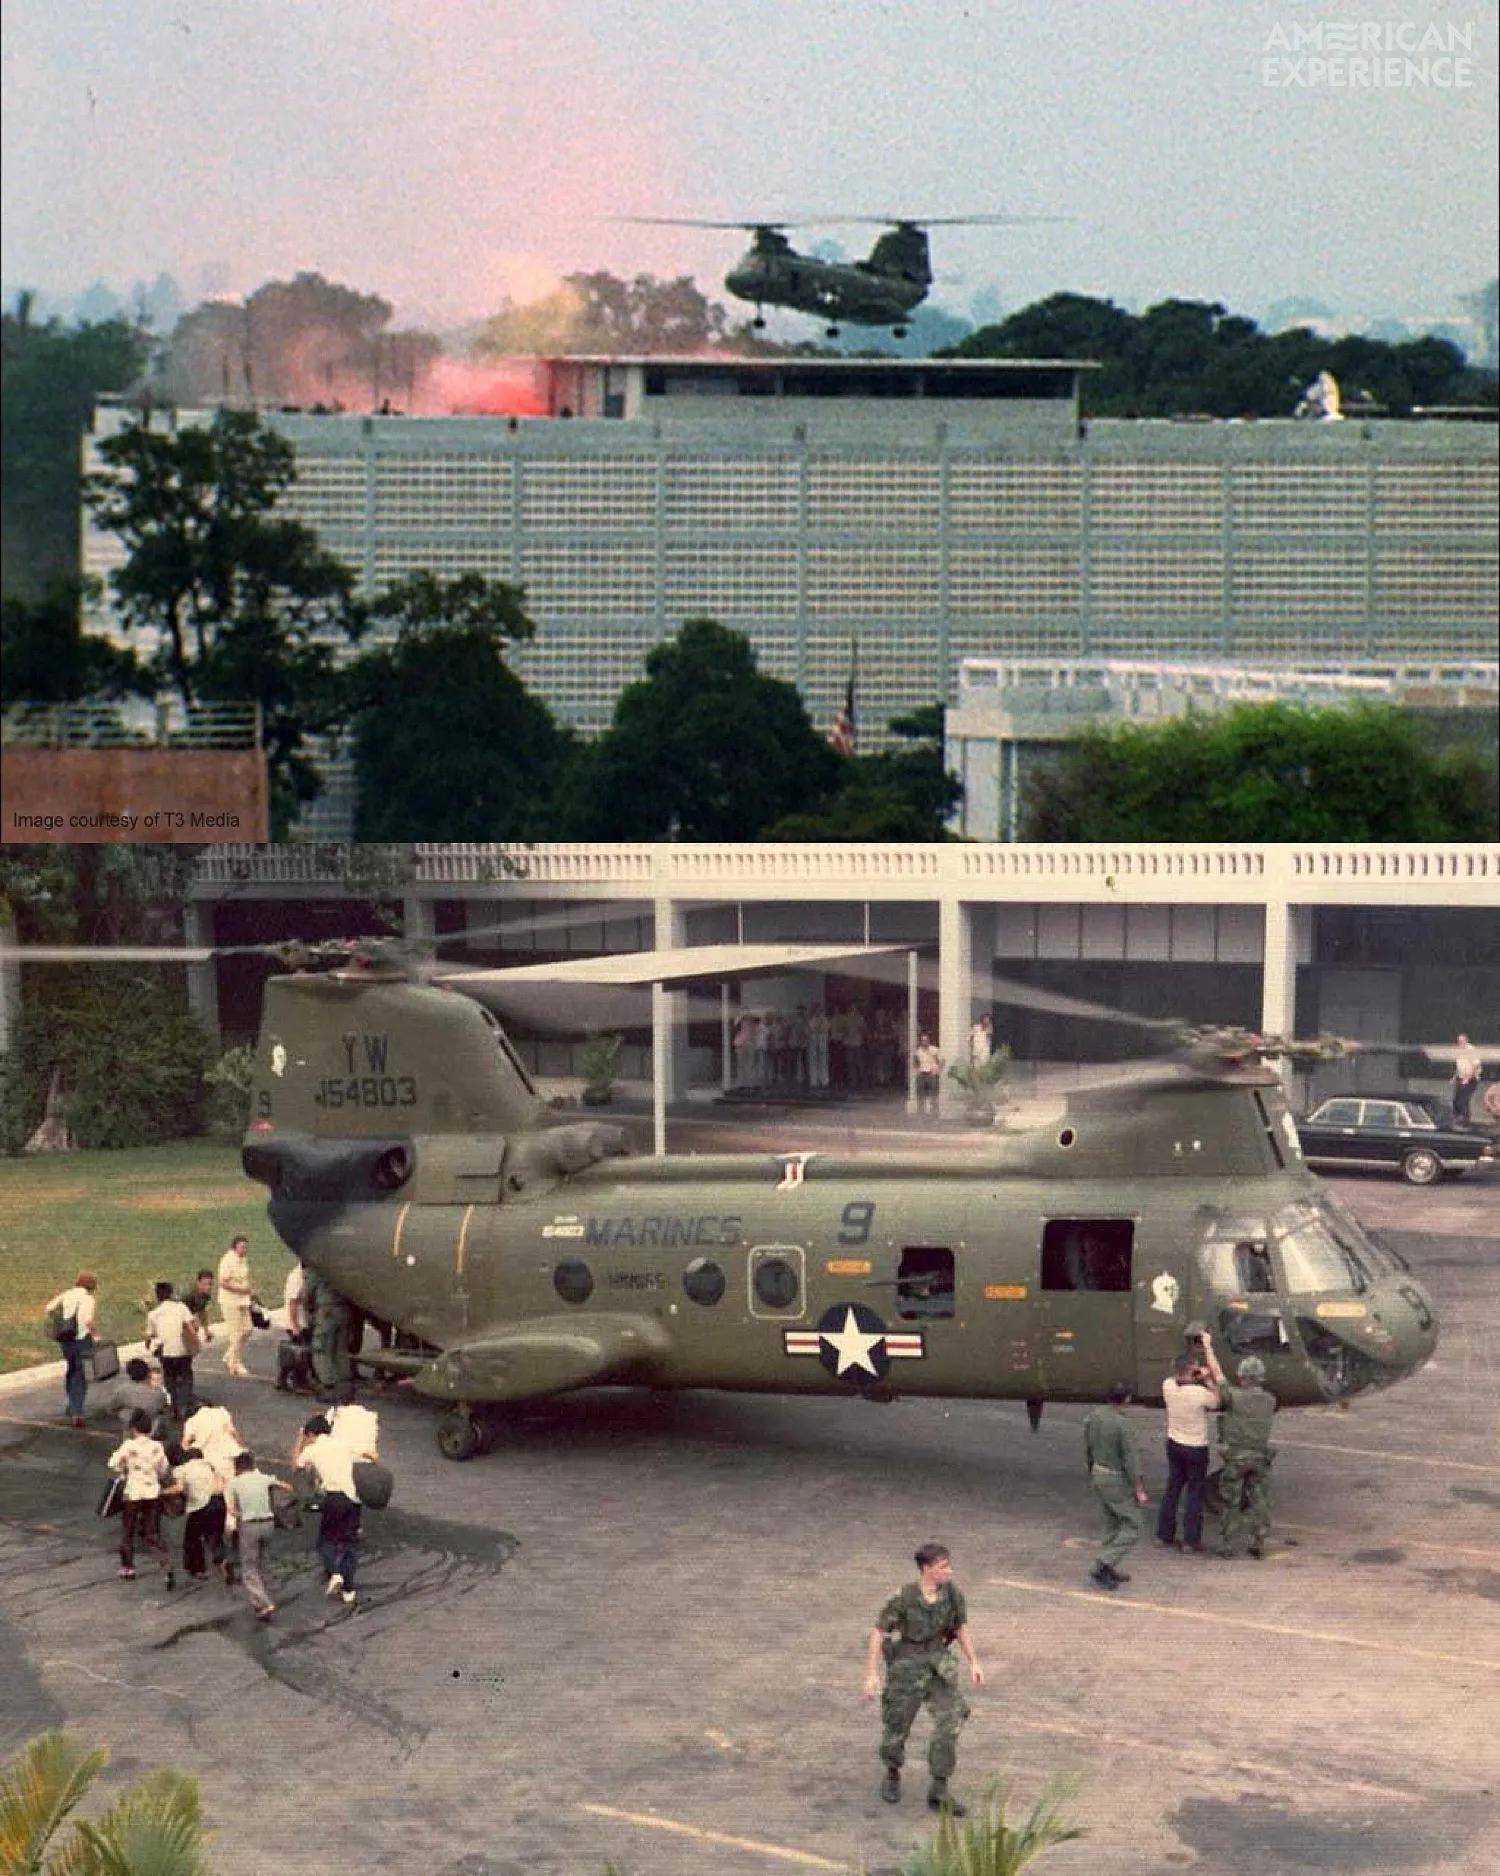 据说就是这一架,越南战争退役后经过修整重新进入到国务院机队服役,一